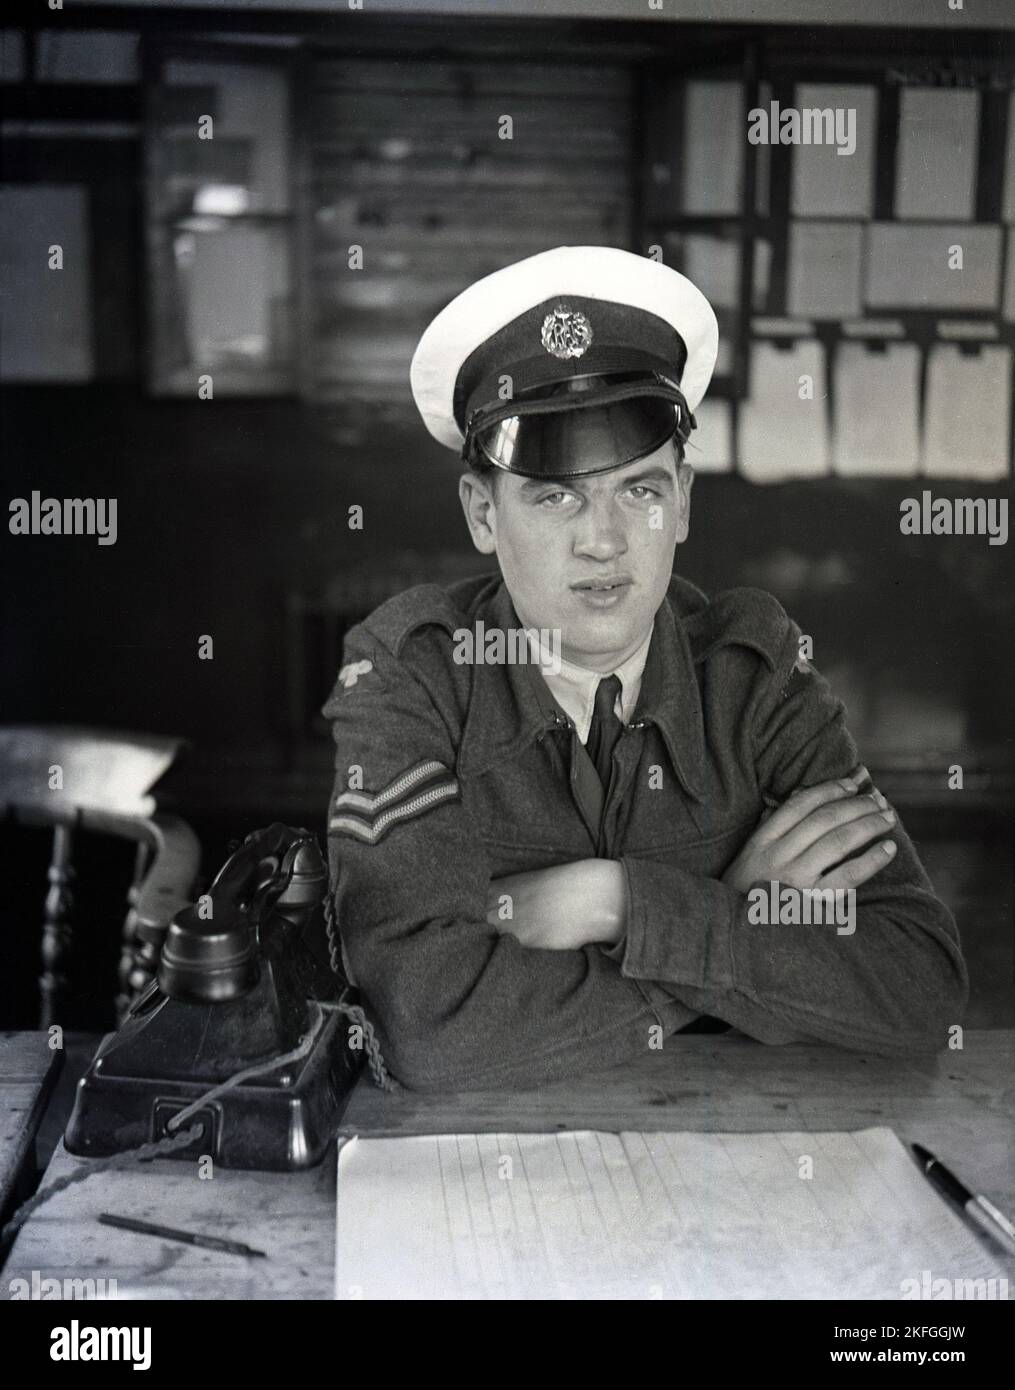 1949, storico, due strisce, telefono, cappello, RAF Longford Camp, Market Drayton, Inghilterra, Regno Unito, distintivo RAF sul cappello Foto Stock